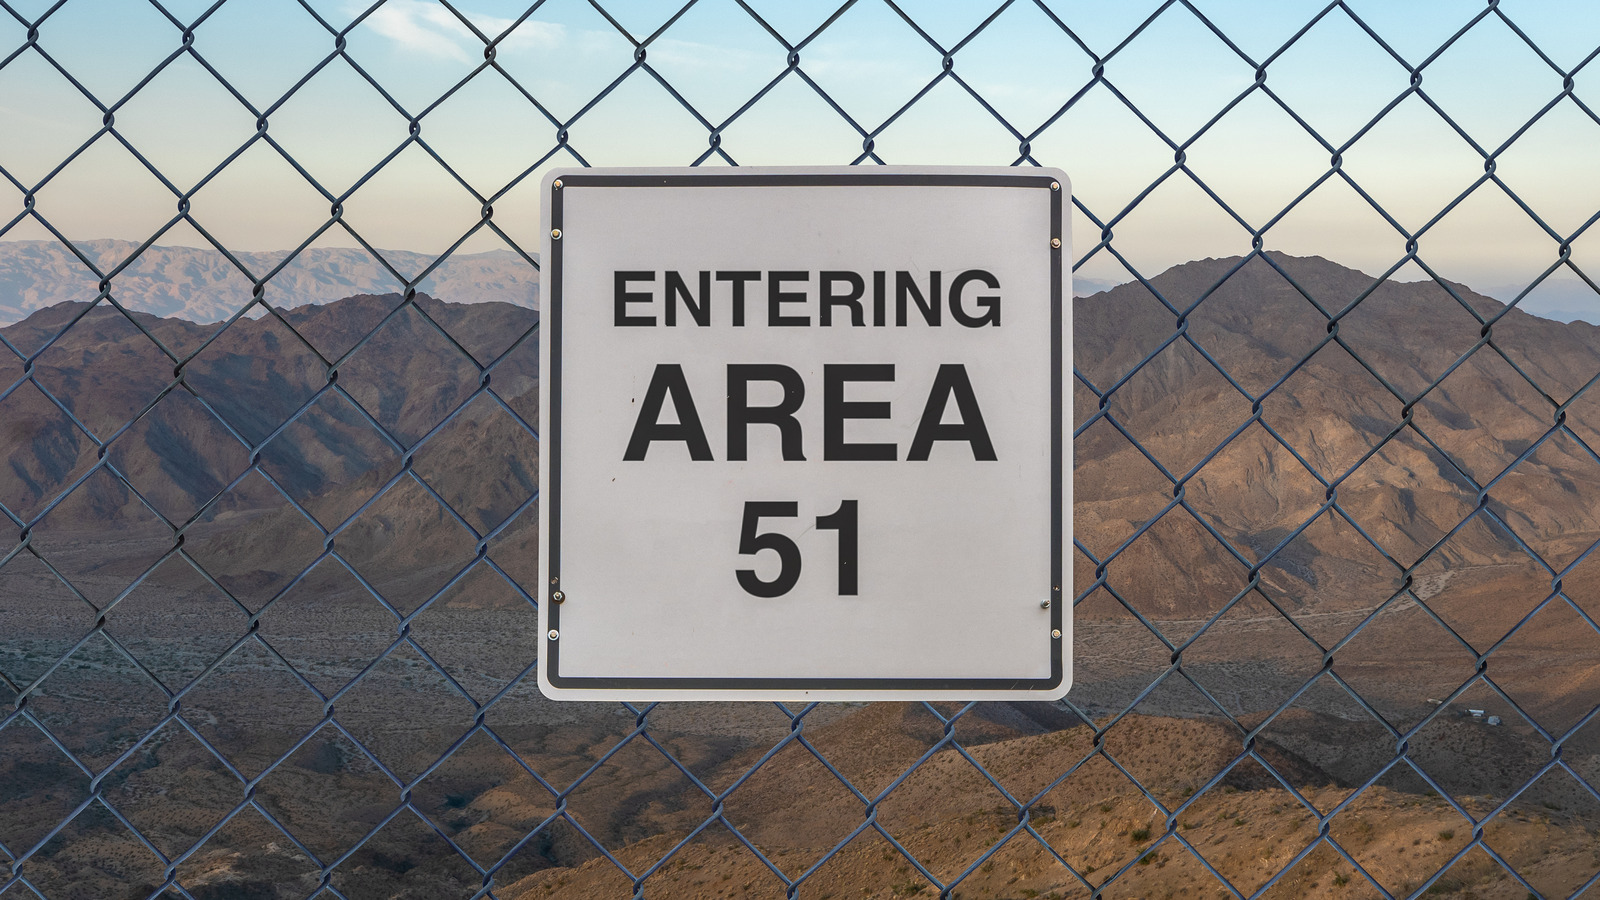 O grande mito sobre a área 51 que você precisa parar de acreditar